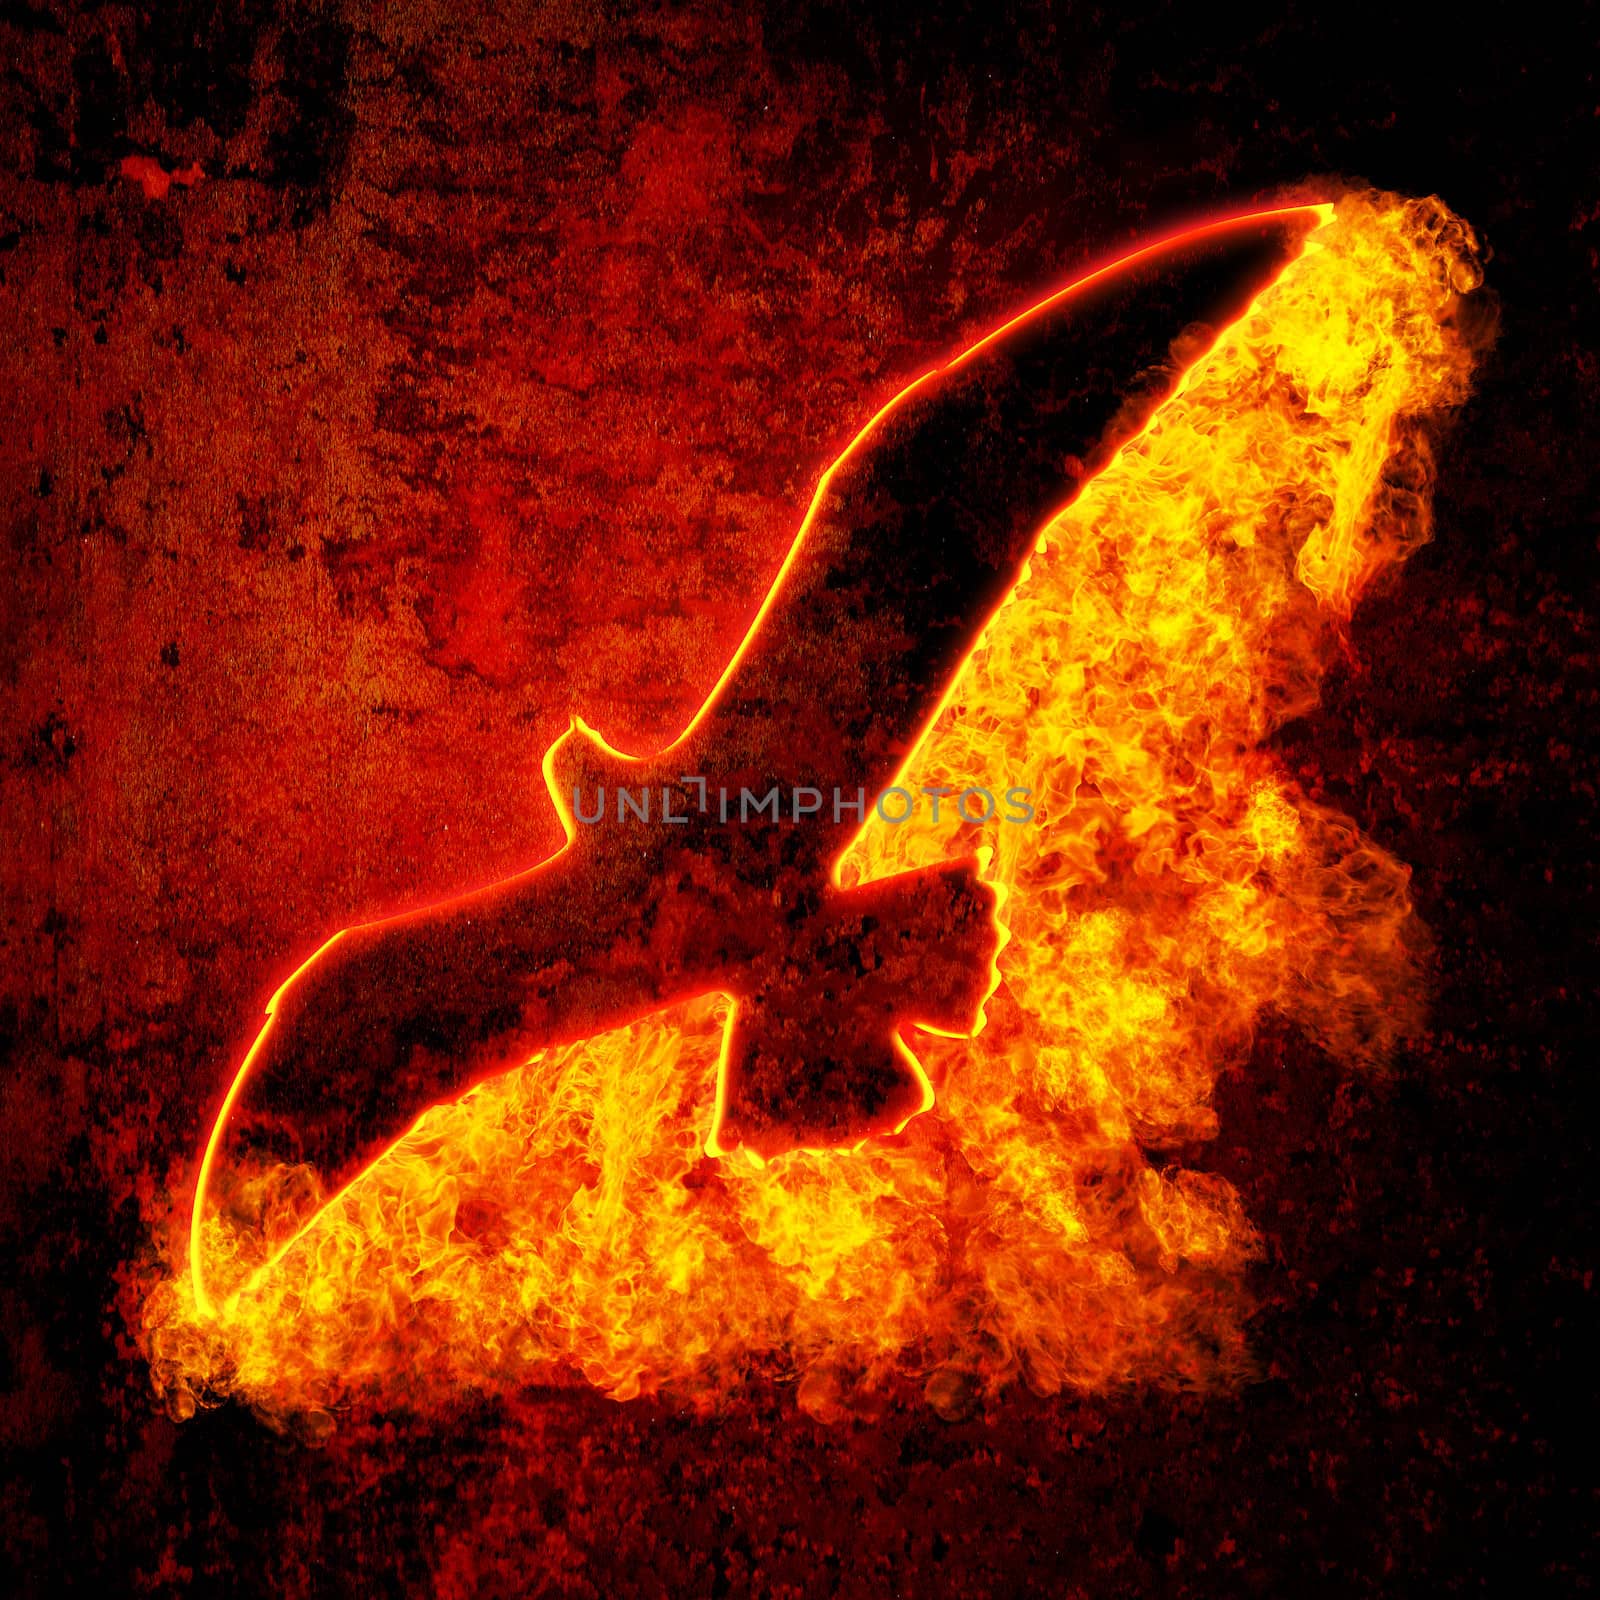 Burning Bird by palinchak